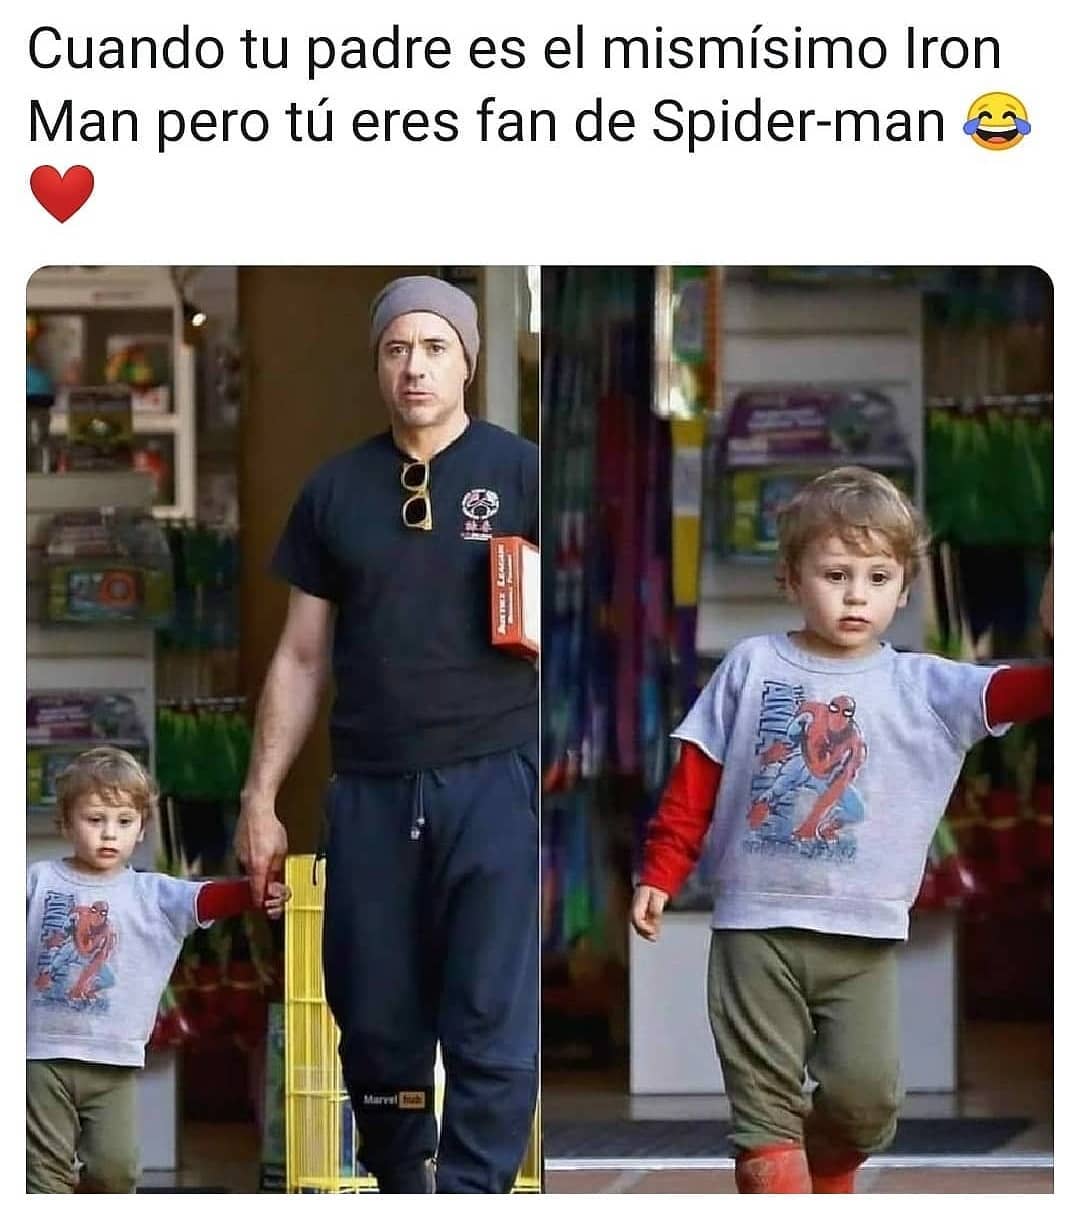 Cuando tu padre es el mismísimo Iron Man pero tú eres fan de Spider-man.